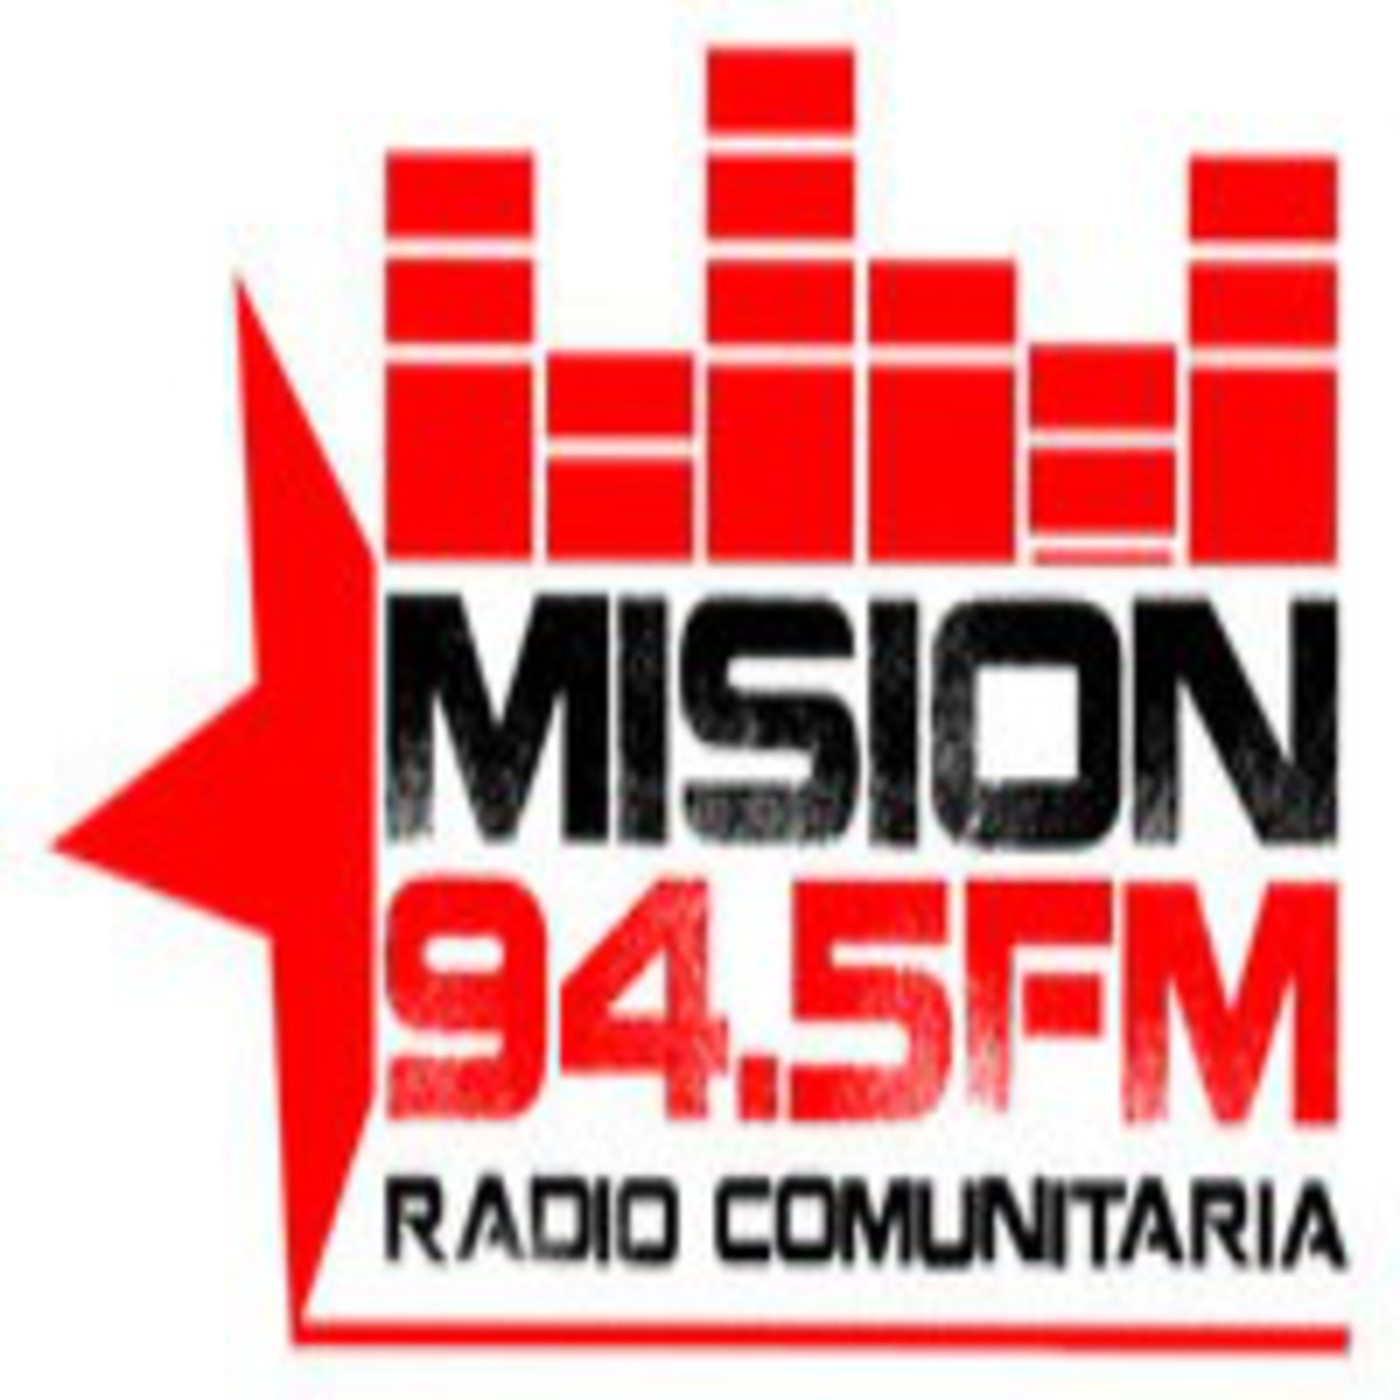 Mierda Cartas credenciales Lágrima Podcast Radio Comunitaria Mision Stereo 94.5fm - Podcast en iVoox